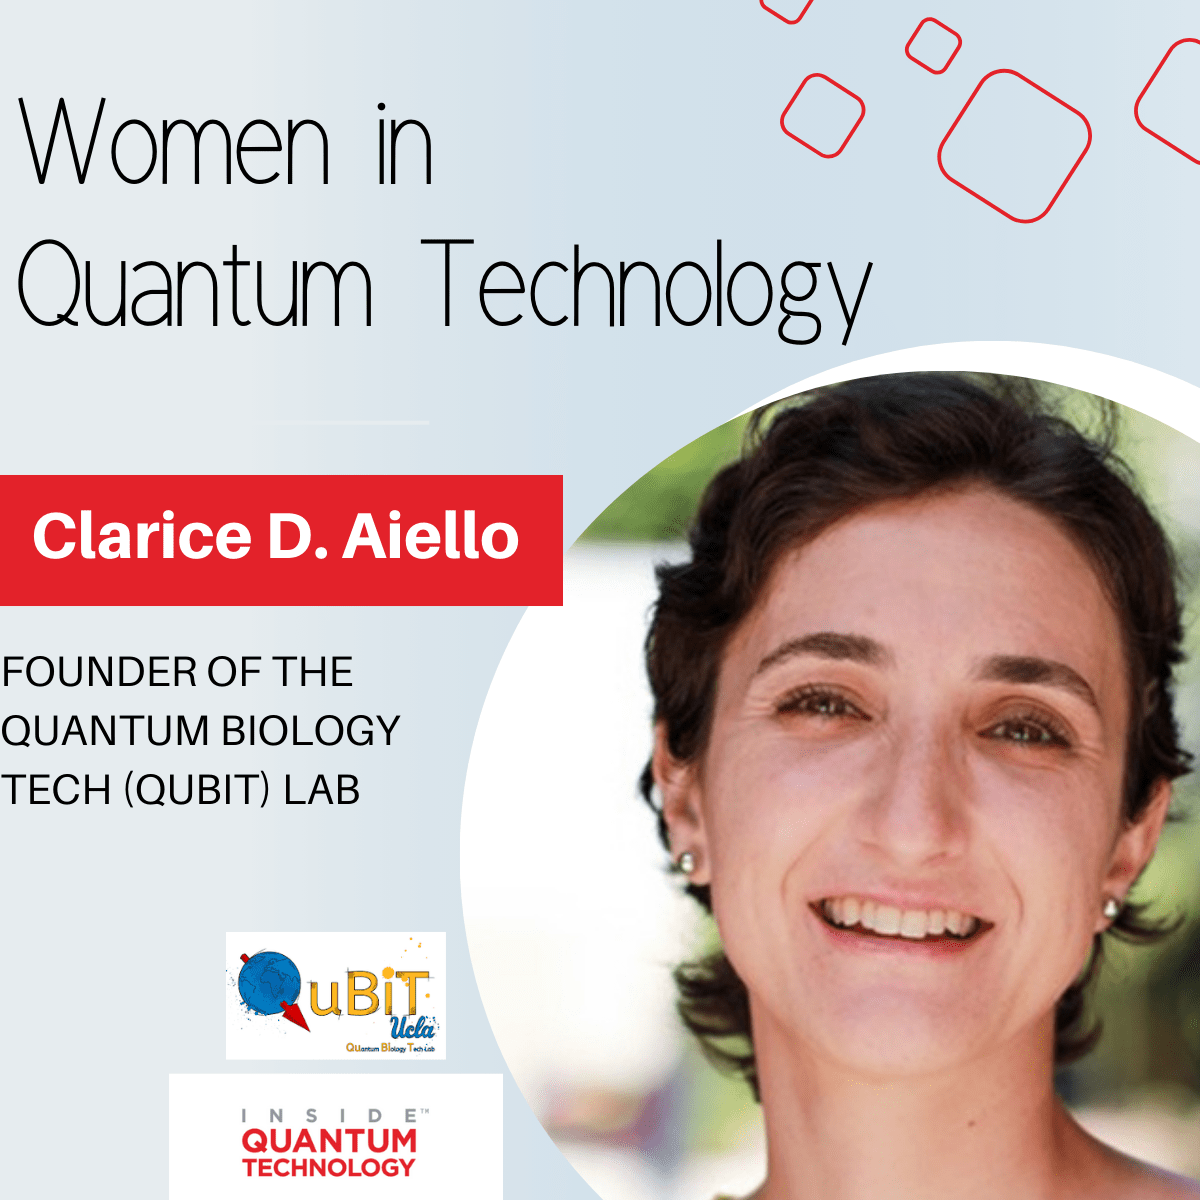 QuBiT 实验室创始人 Clarice D. Aiello 博士讲述了她进入量子生态系统的旅程。